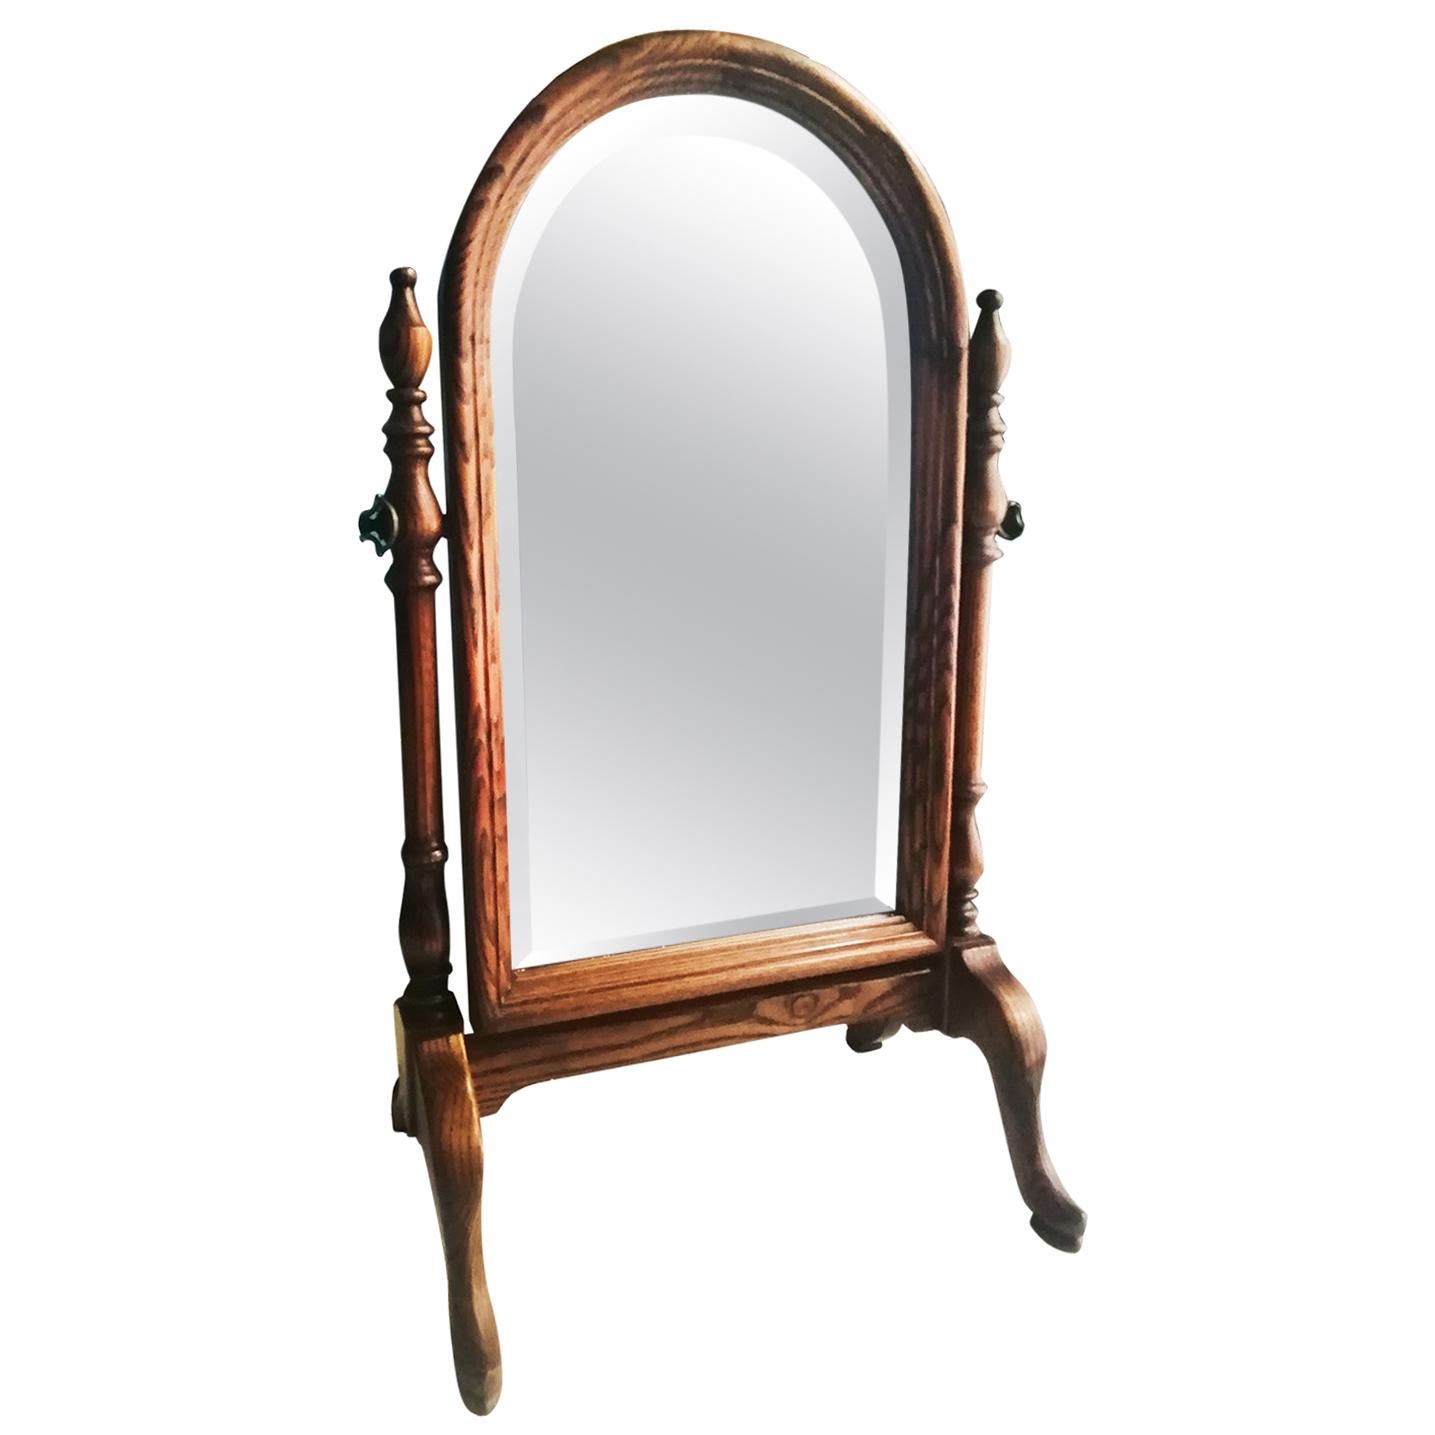 Miroir de table ou miroir de toilette Wanity en bois, début du 20e siècle

Miroir de courtoisie ou de coiffeuse 
Magnifique miroir pliant, à poser sur le dessus d'une table ou d'une console. C'est un miroir biseauté avec une forme semi-circulaire en